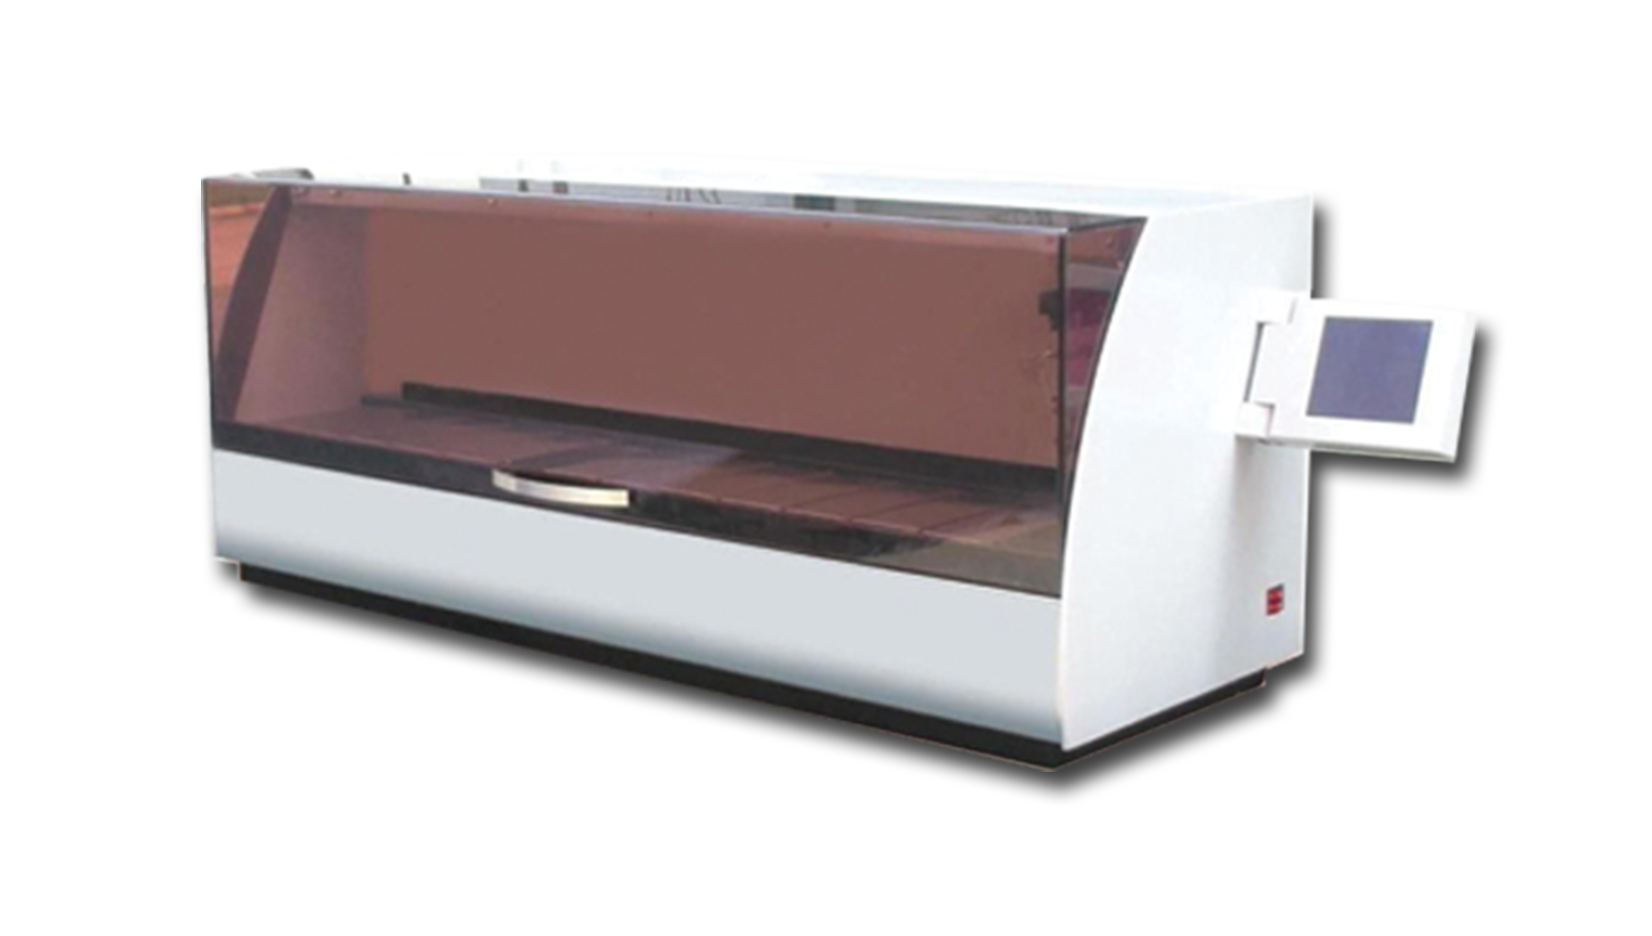 دستگاه رنگ امیزی بافت اتوماتیک - automatic tissue slide stainer - zytech - دستگاه - پاتولوژی و سیتولوژی - آرمان تشخیص فیدار